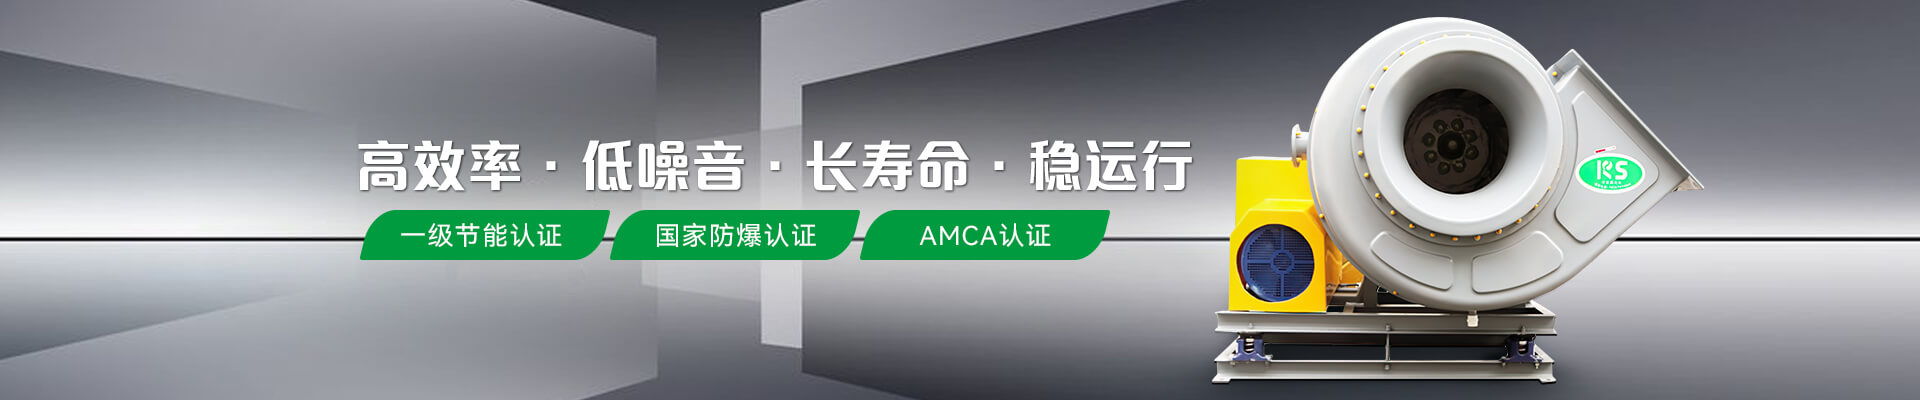 维多利亚老品牌vic风机节能认证防爆认证AMCA认证